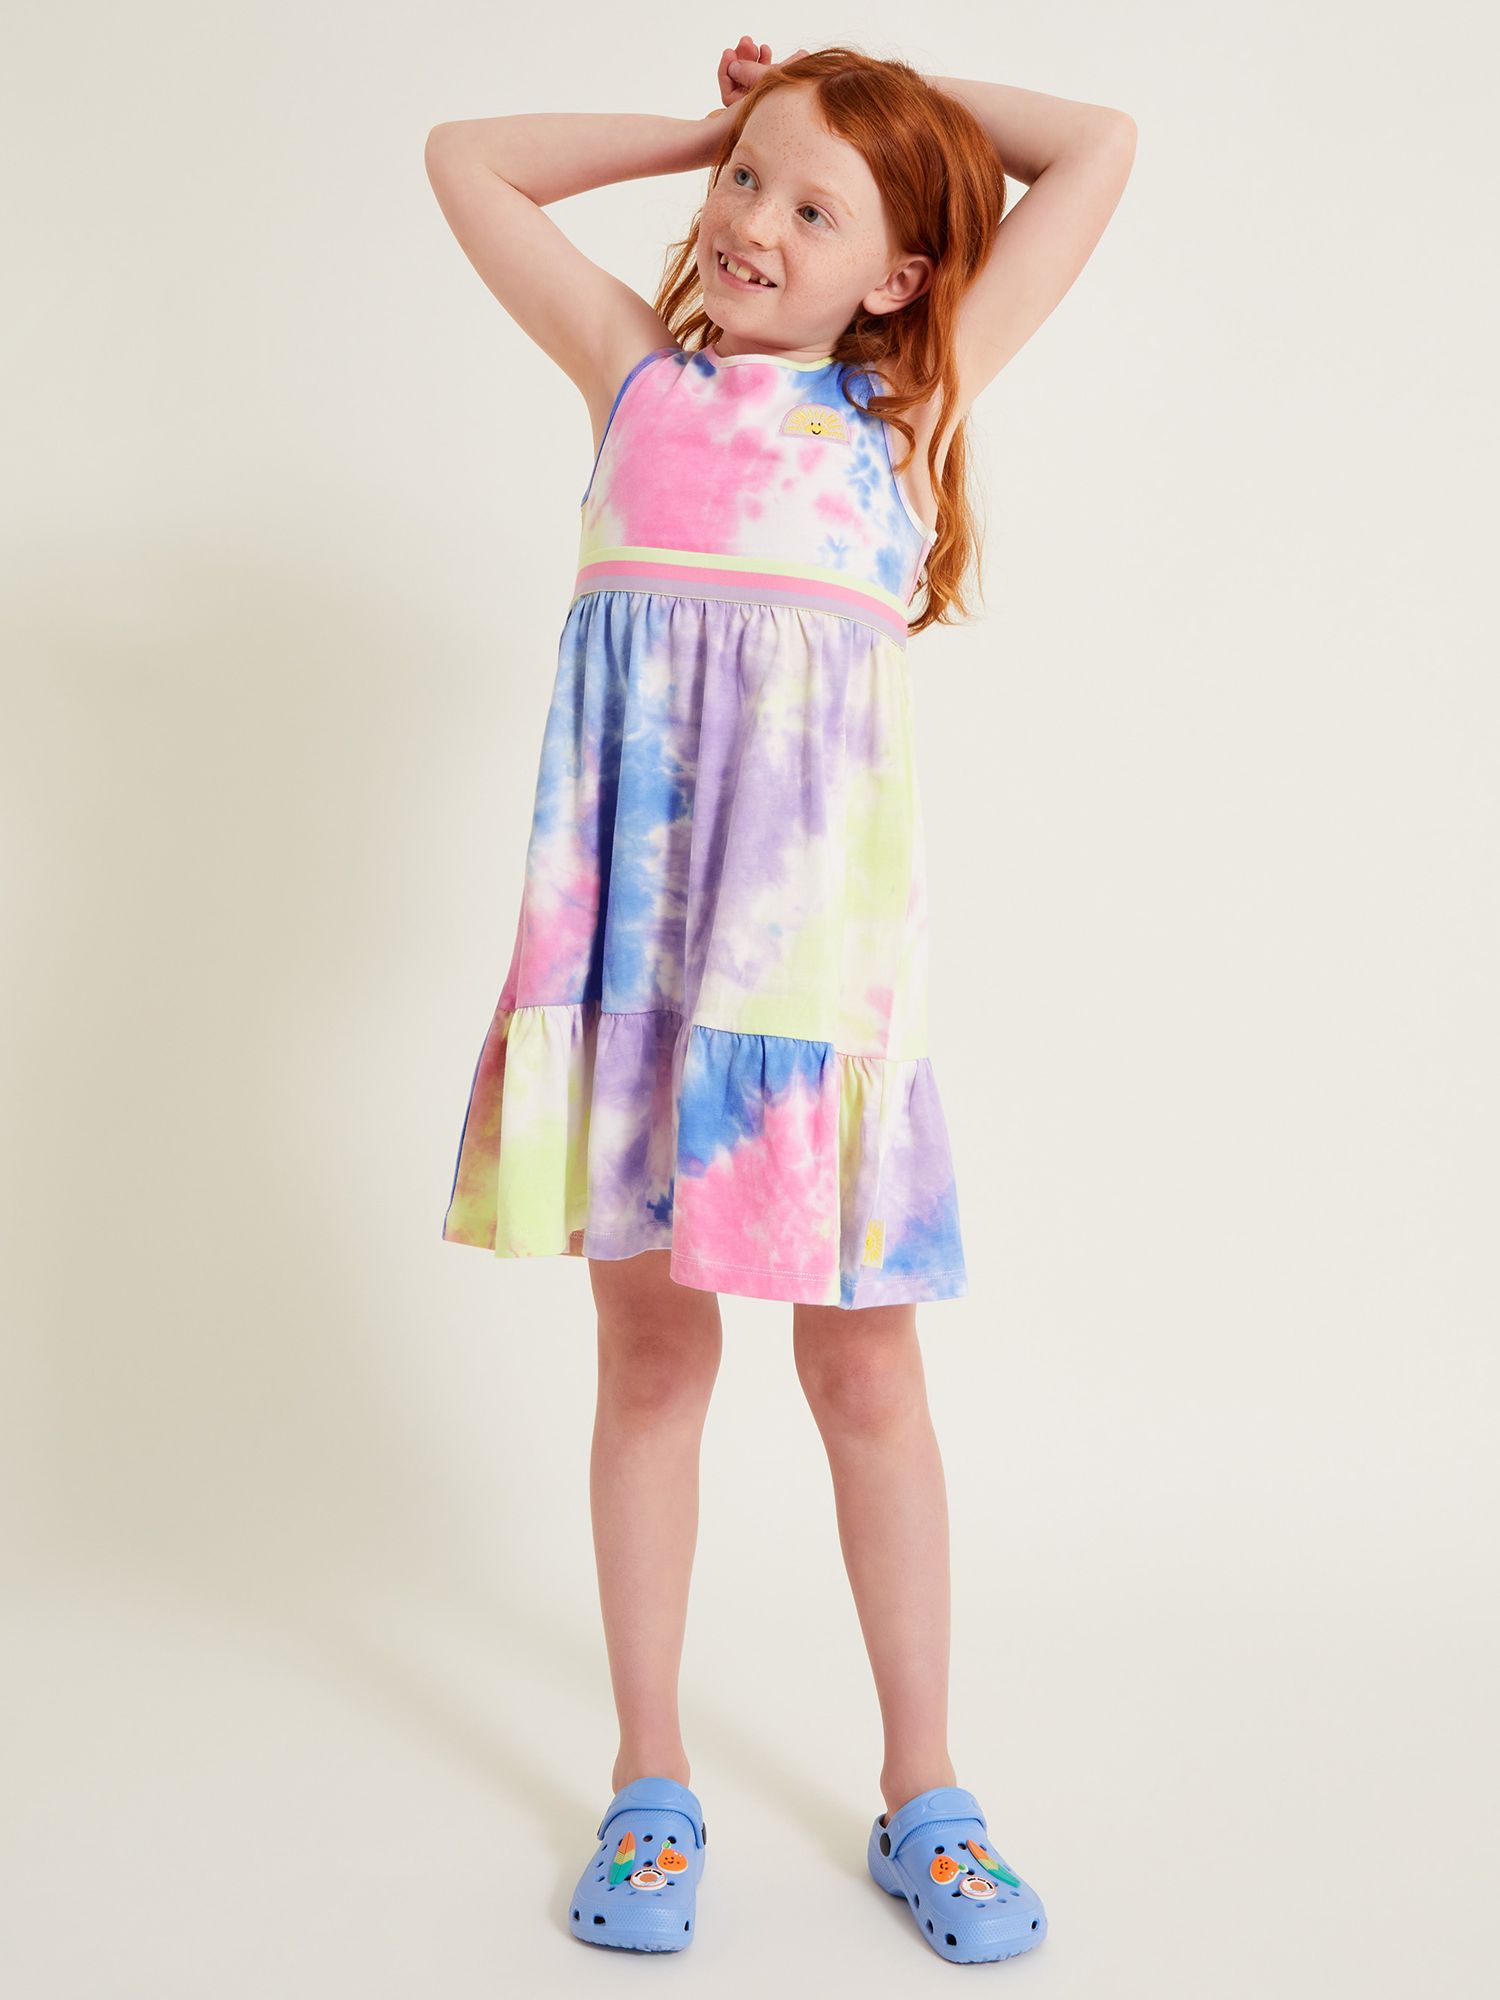 Monsoon Kids' Tie Dye Tiered Dress, Multi, 3-4 years